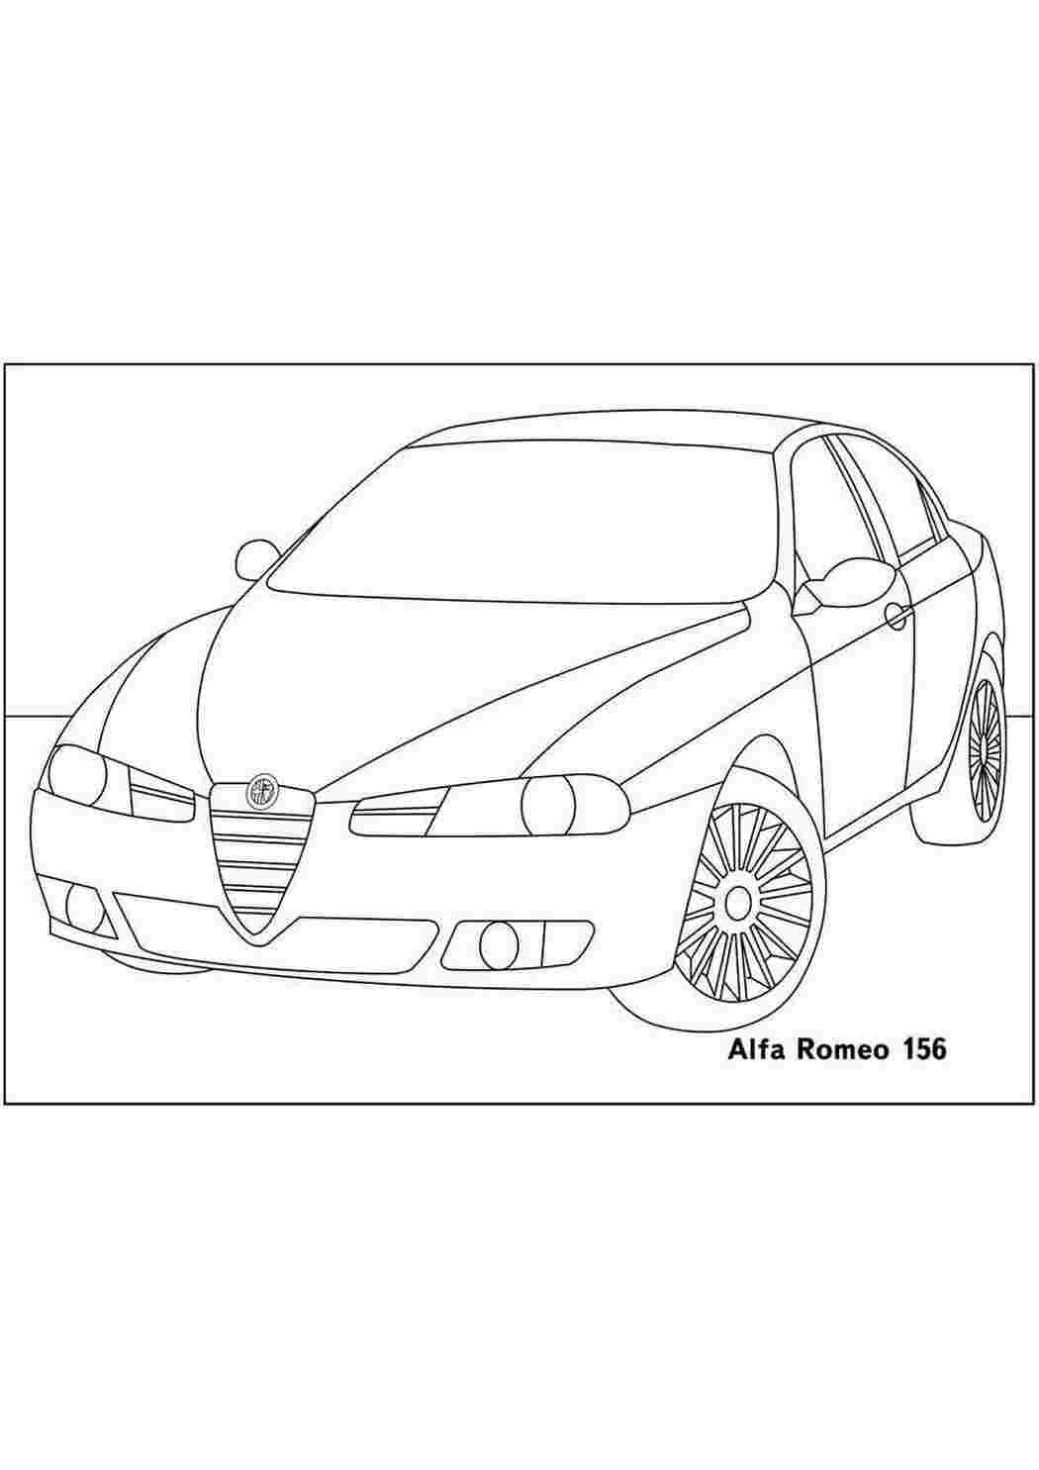 Alfa Romeo Brera Kleurplaat